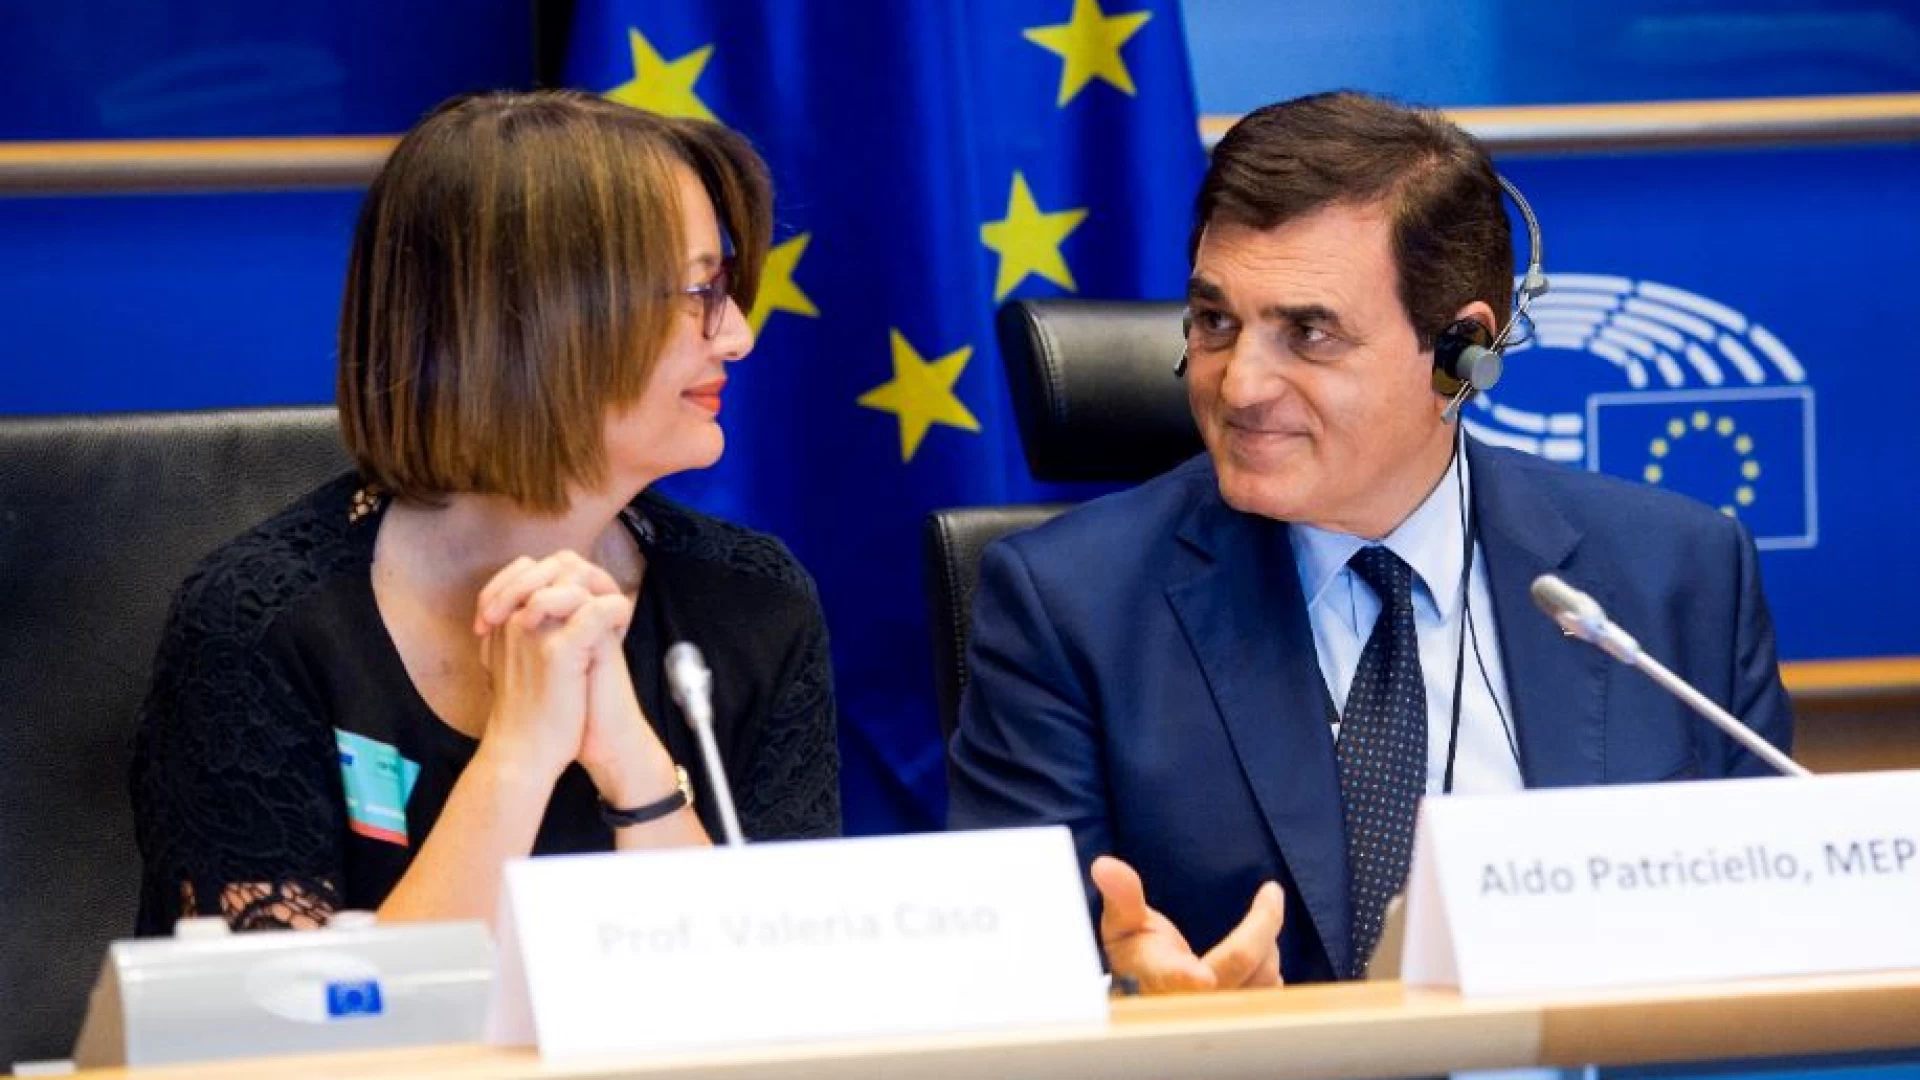 Stato dell’Unione, Mario Draghi al Parlamento Europeo. Patriciello: “Parole di grande visione. Ora rivedere i trattati”.